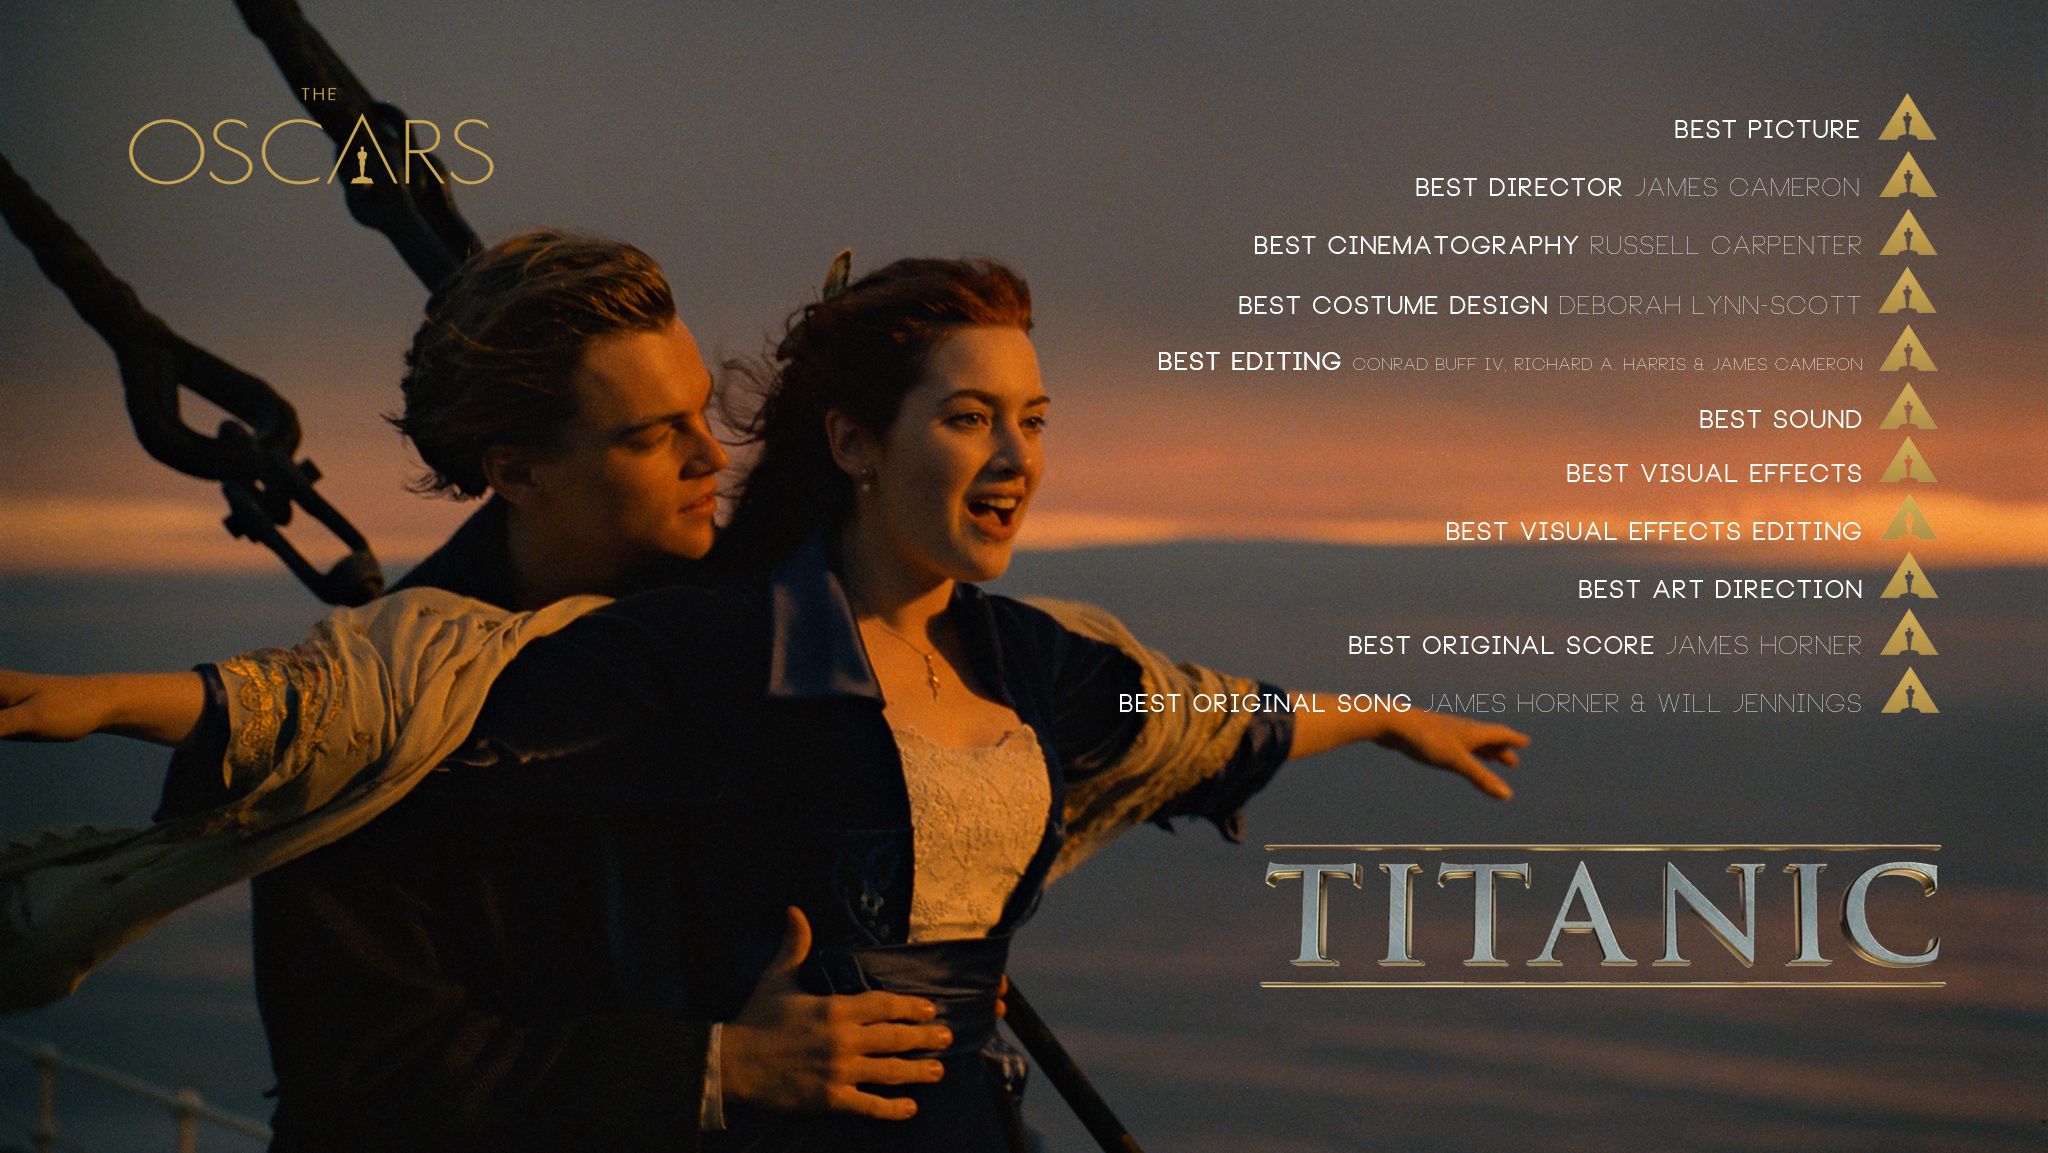 Fun Facts: Titanic